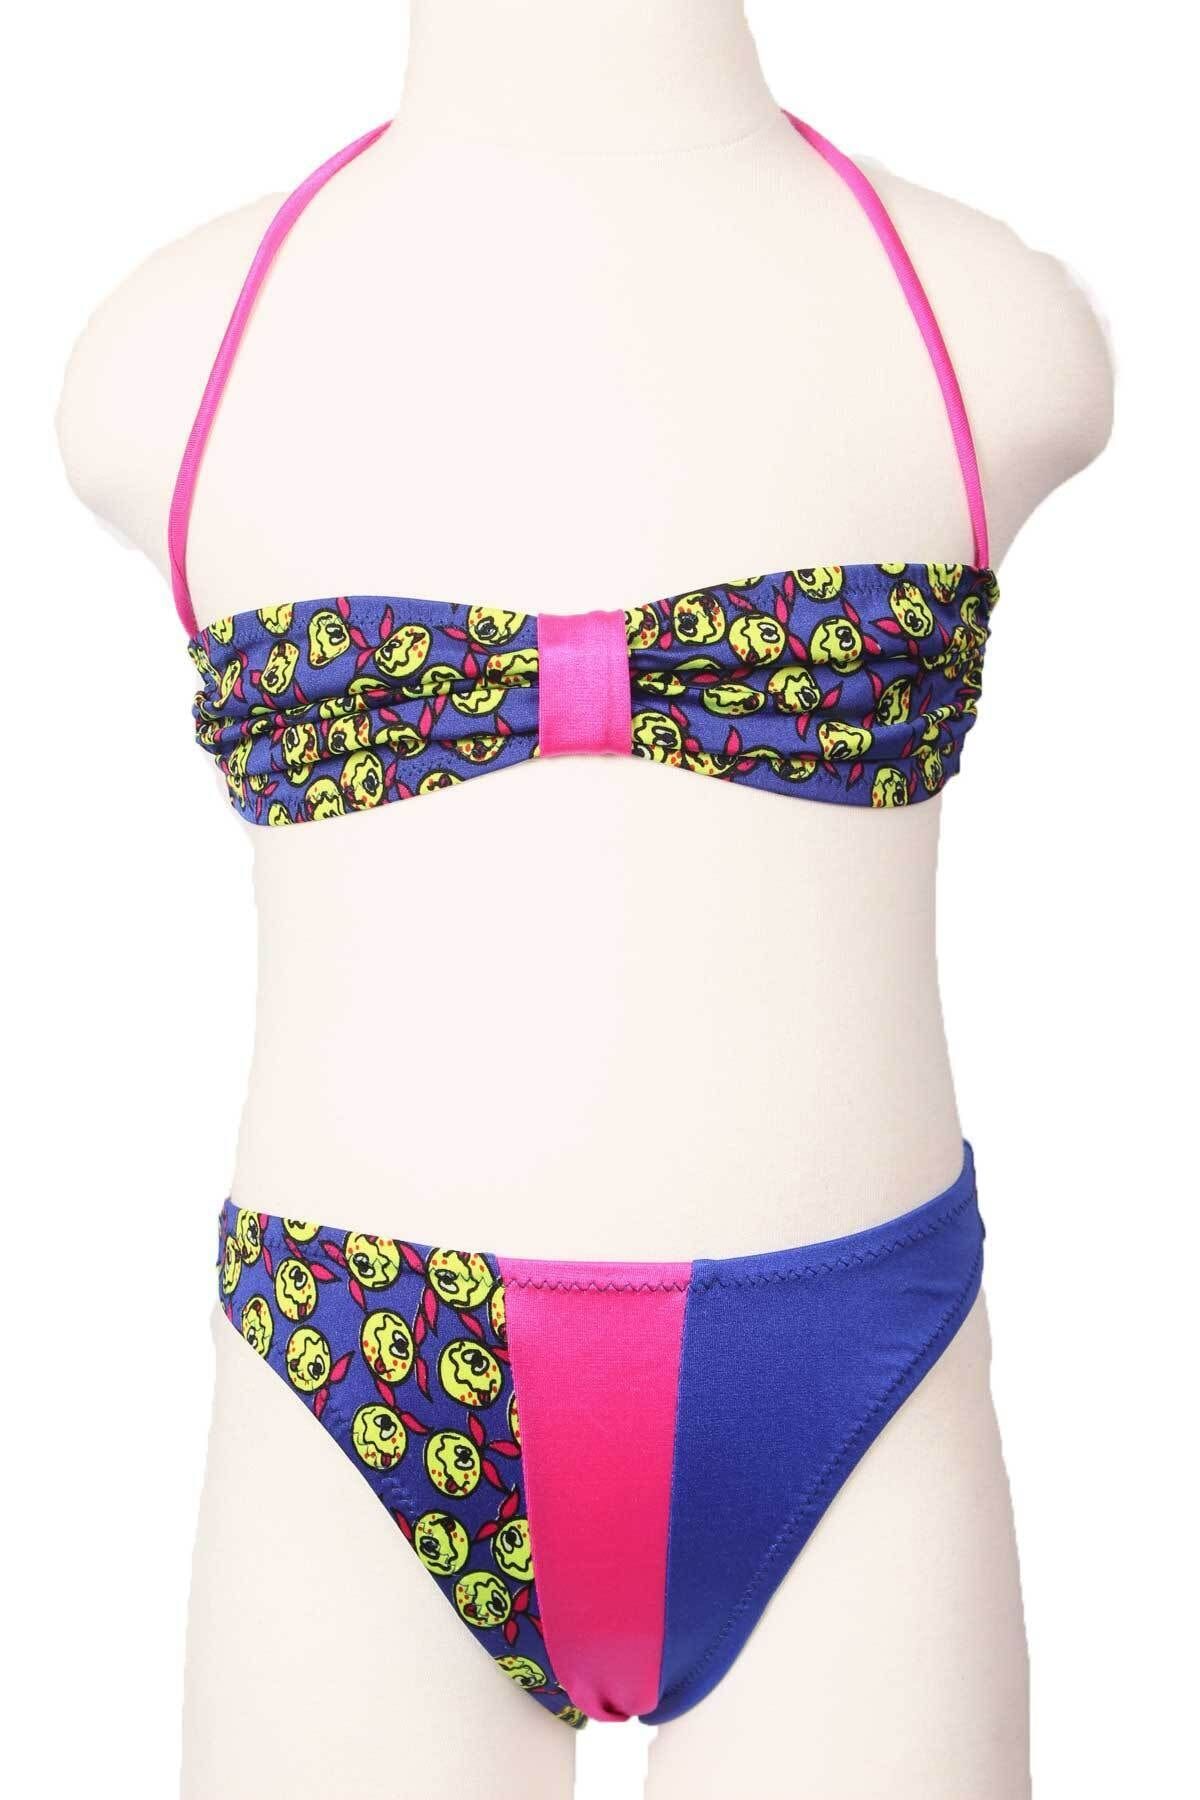 Sude Ayl Kız Çocuk Sax Boyundan Bağlamalı Straplez Model Empirme Desenli Alt Üst Bikini Takım 117